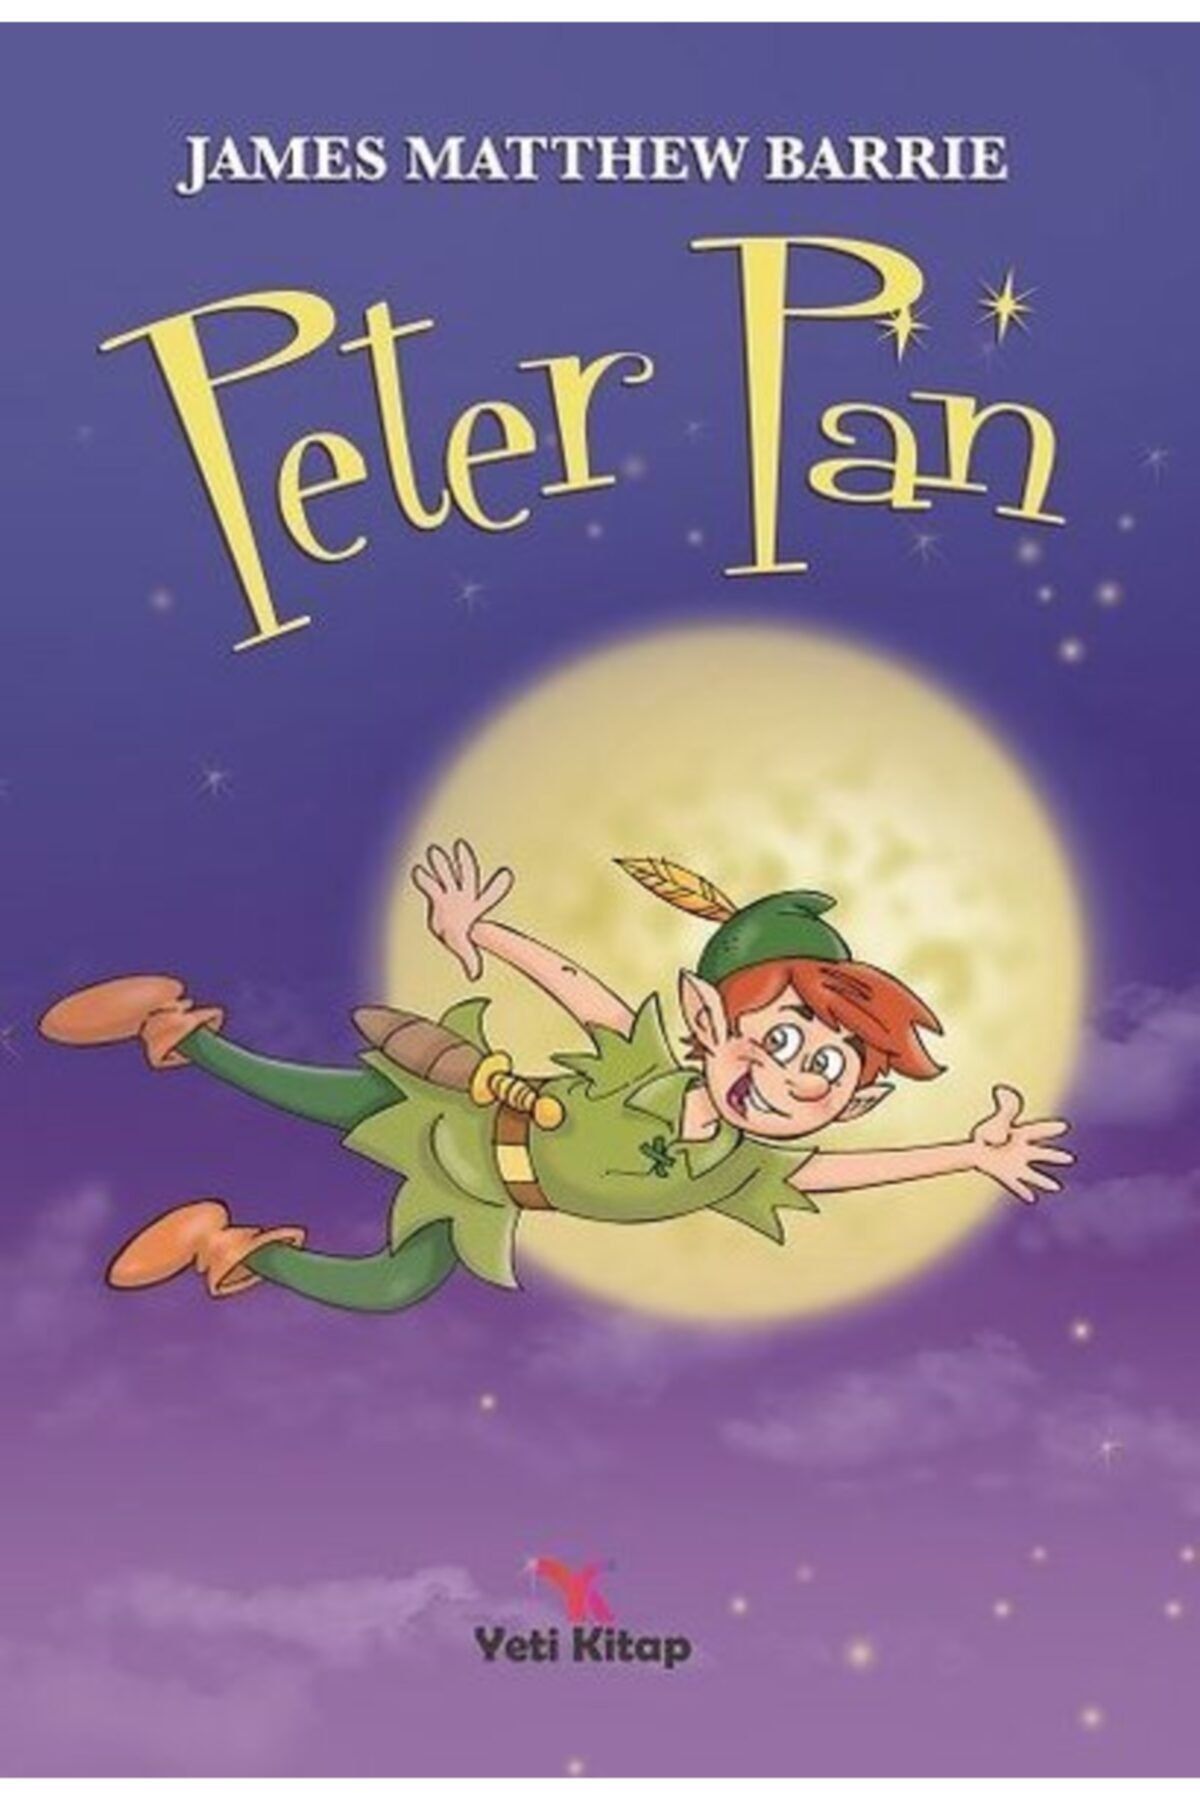 yeti kitap Peter Pan